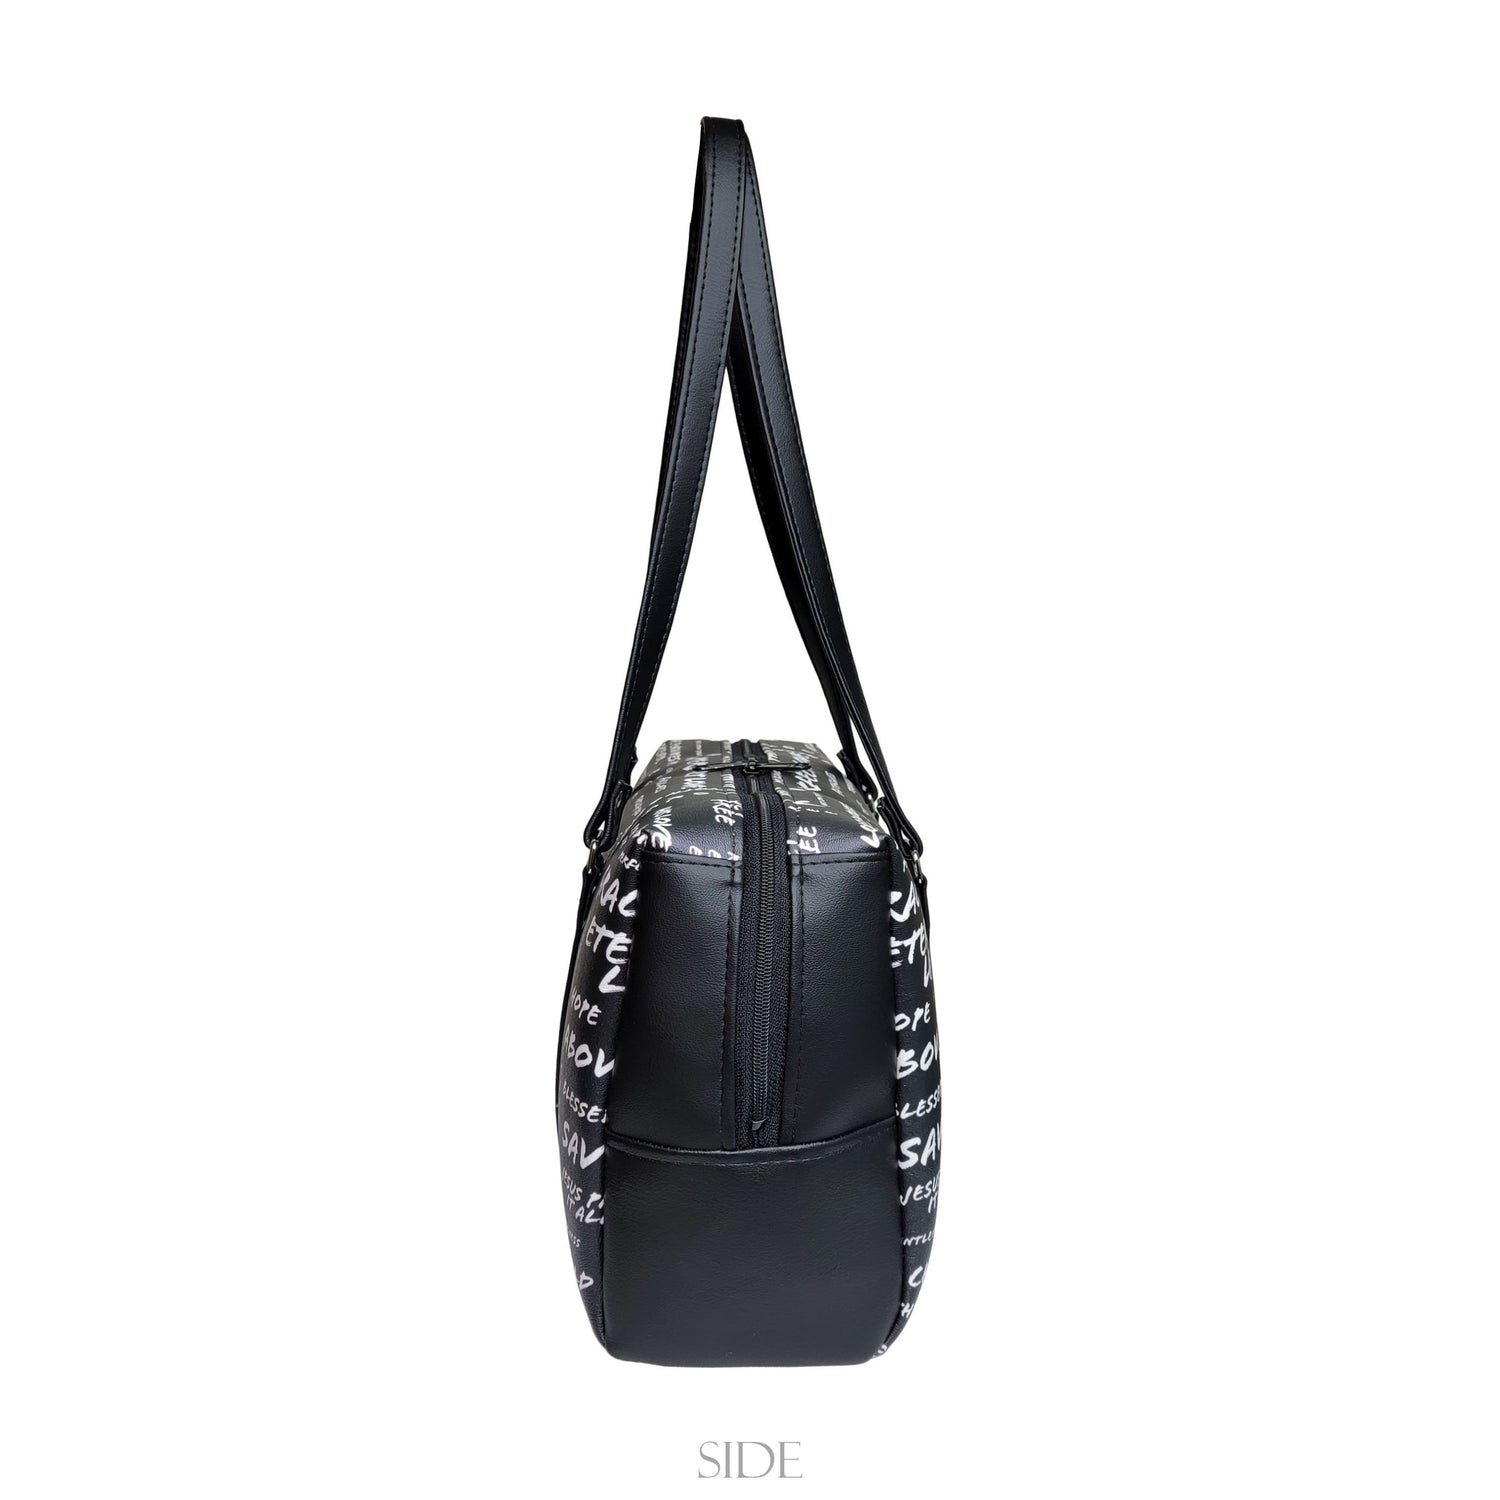 Anine Bing 'Colette' Croc-Embossed Leather Shoulder Bag in Beige US$632 |  Leather shoulder bag, Bag sale, Shoulder bag